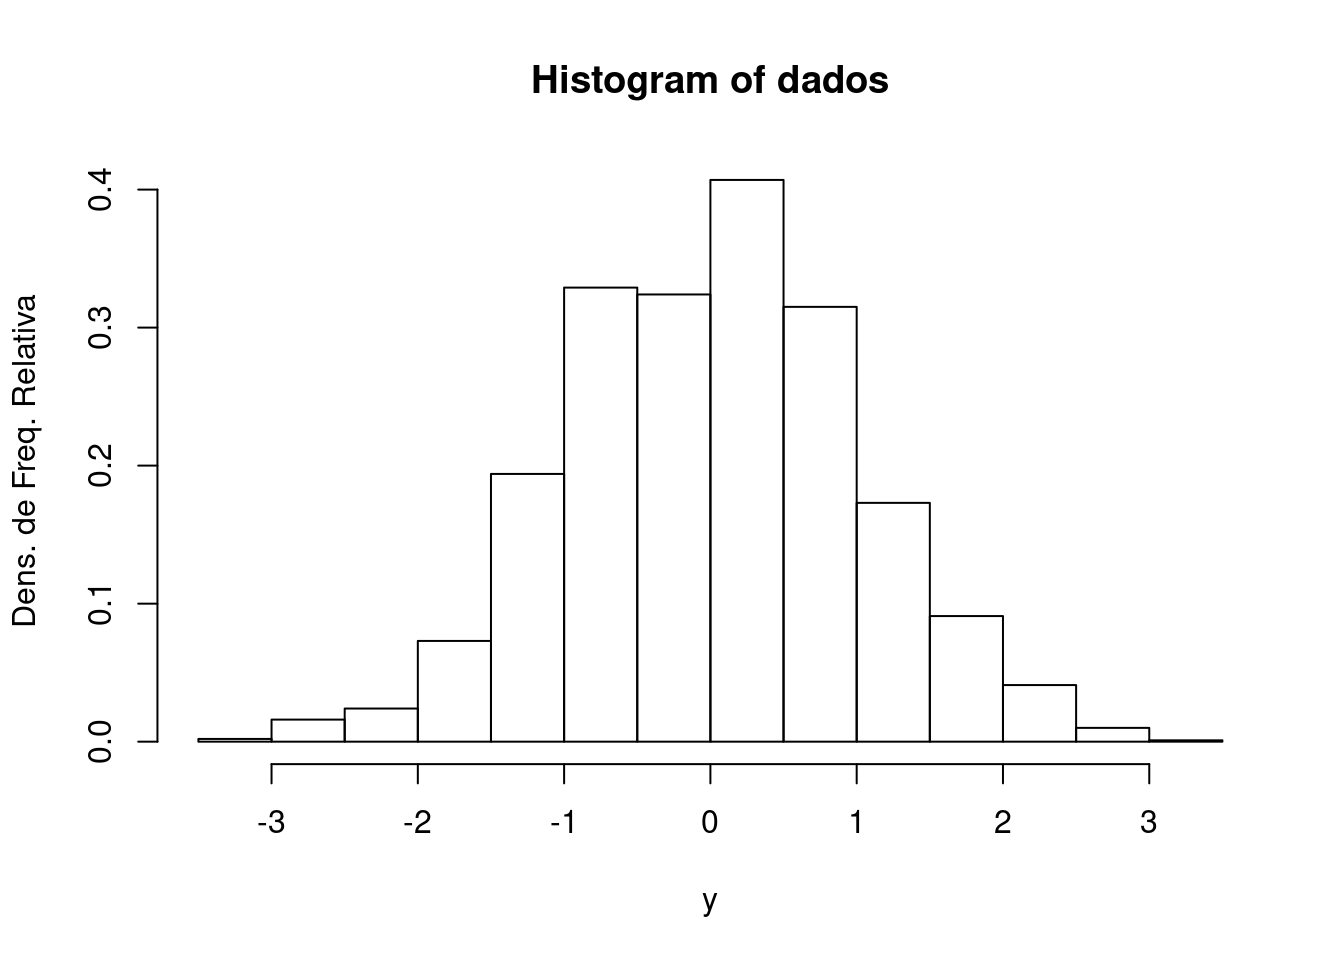 Histograma de densidade de frequência relativa de uma amostra aleatória com 2000 elementos de uma distribuição normal padrão.